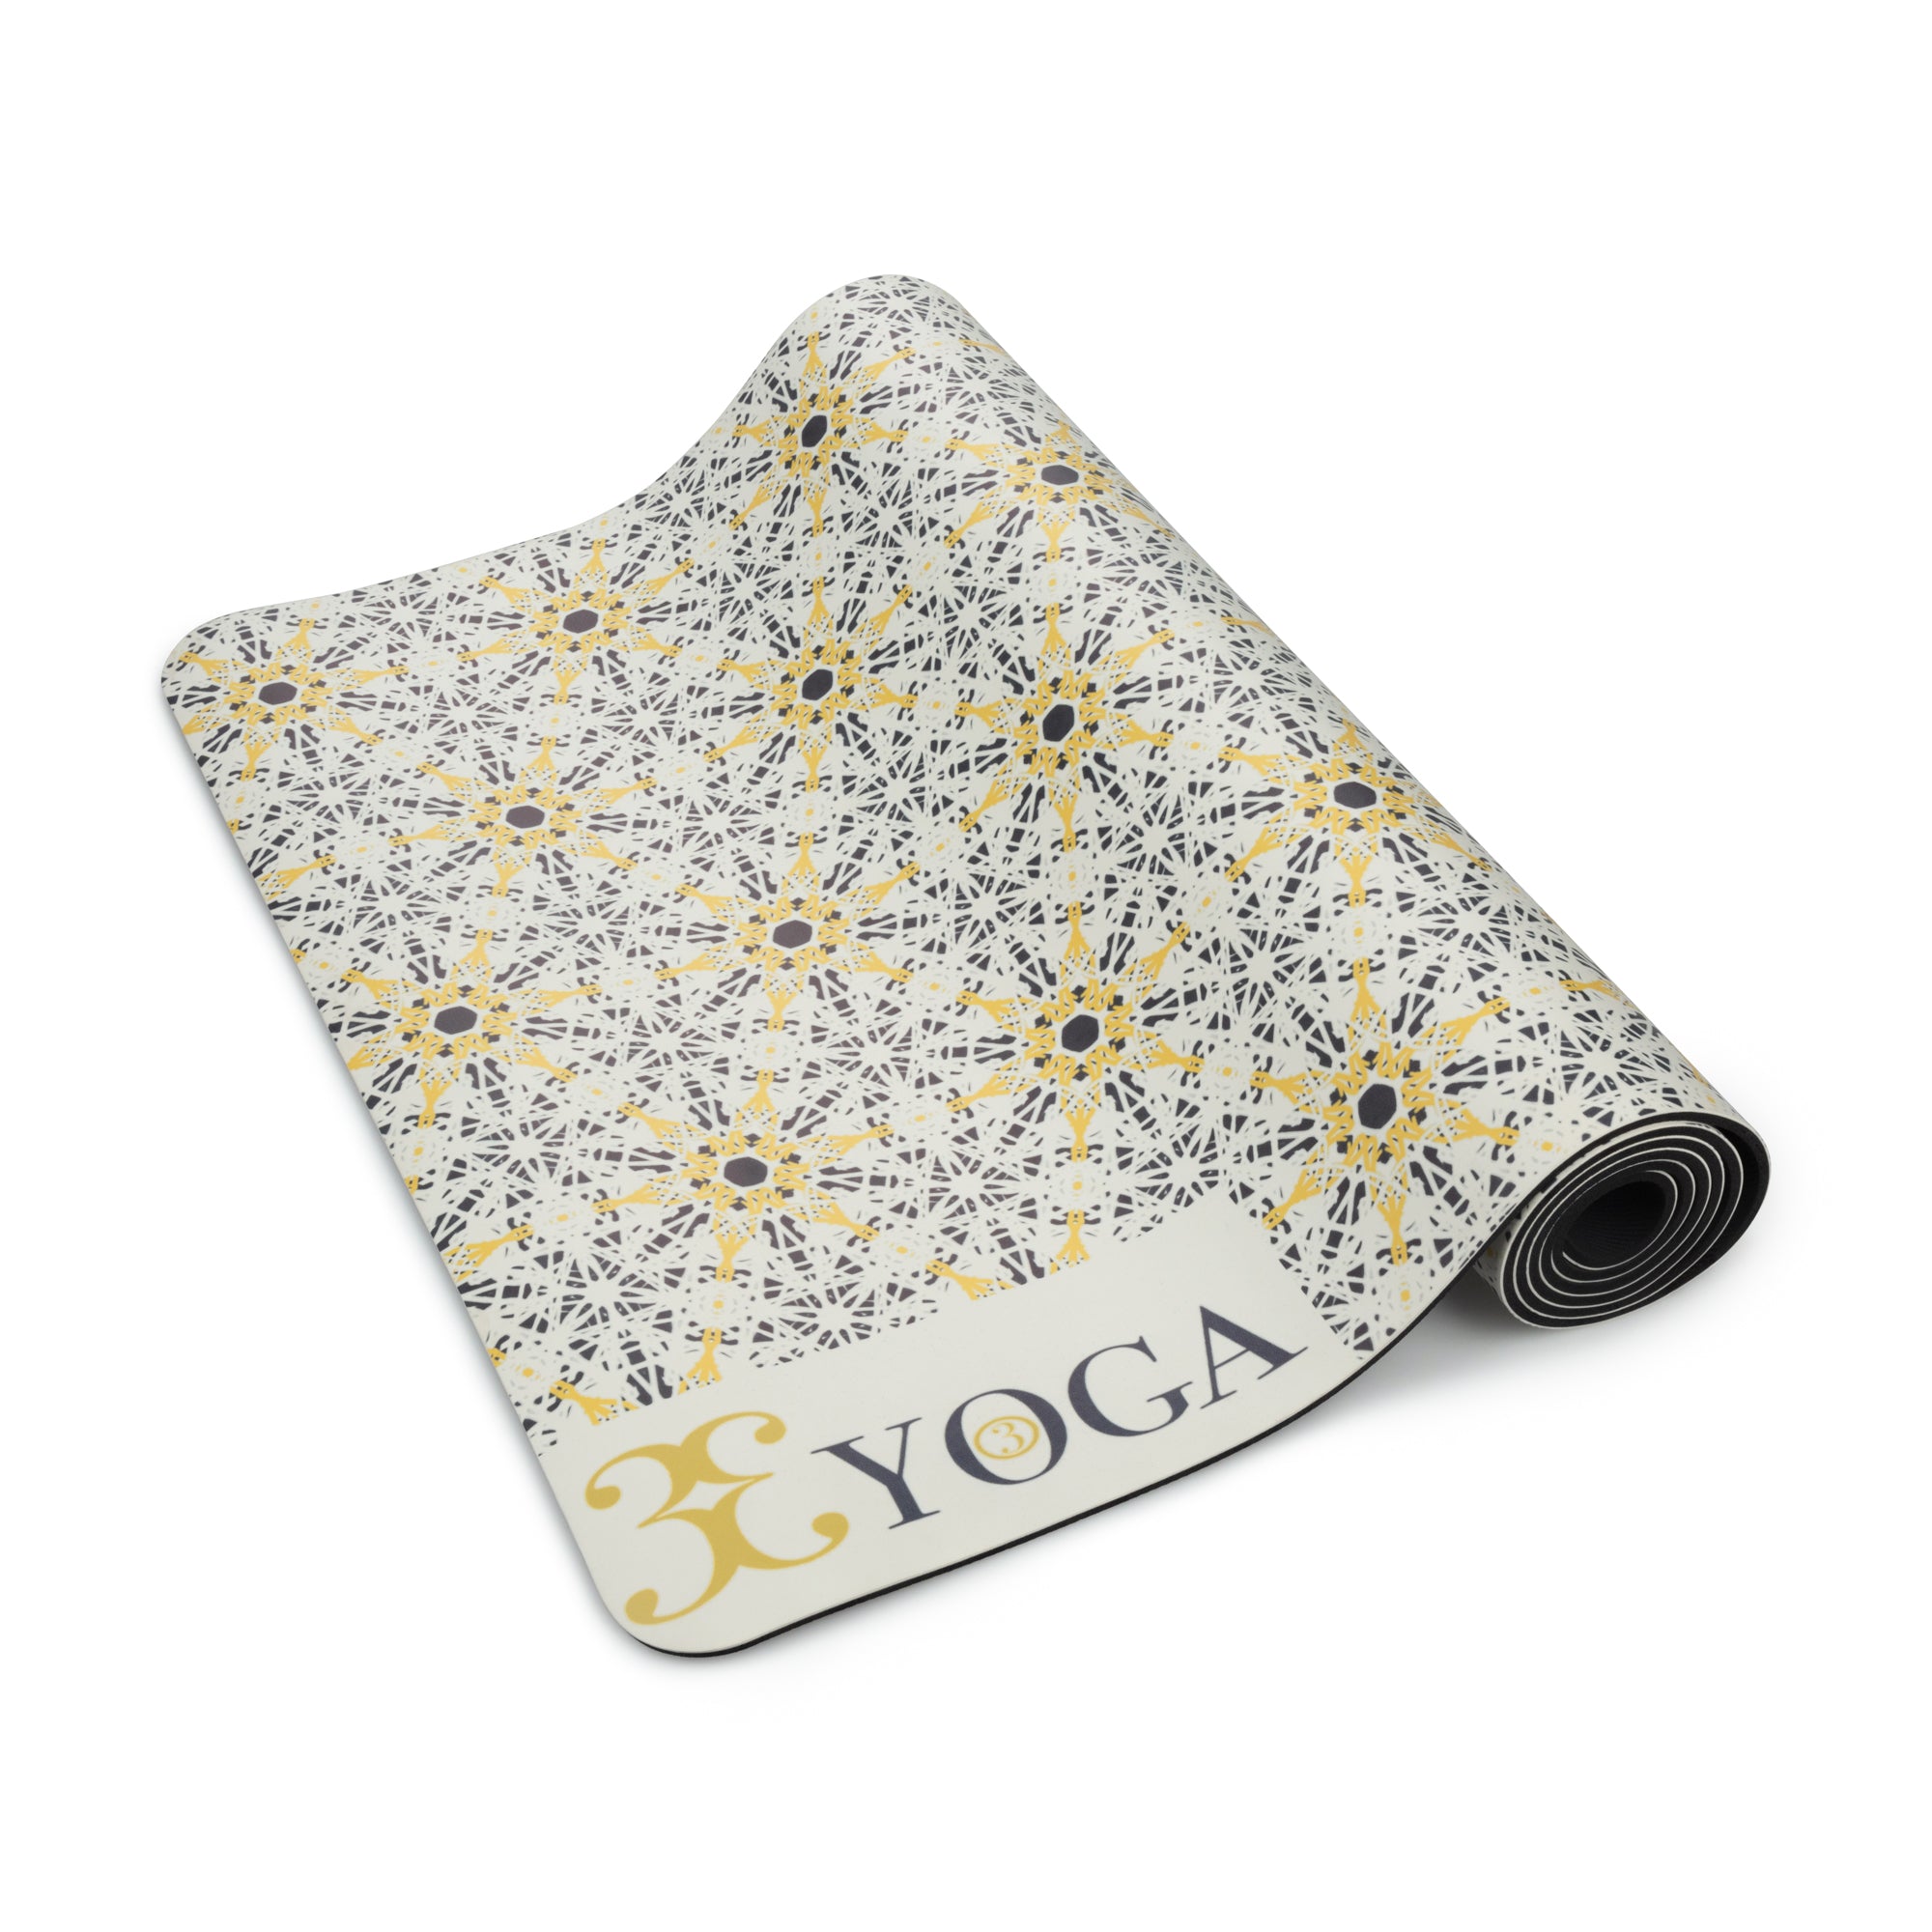 Gaiam Premium Print Yoga Mat, 5mm, Citron Sundial 